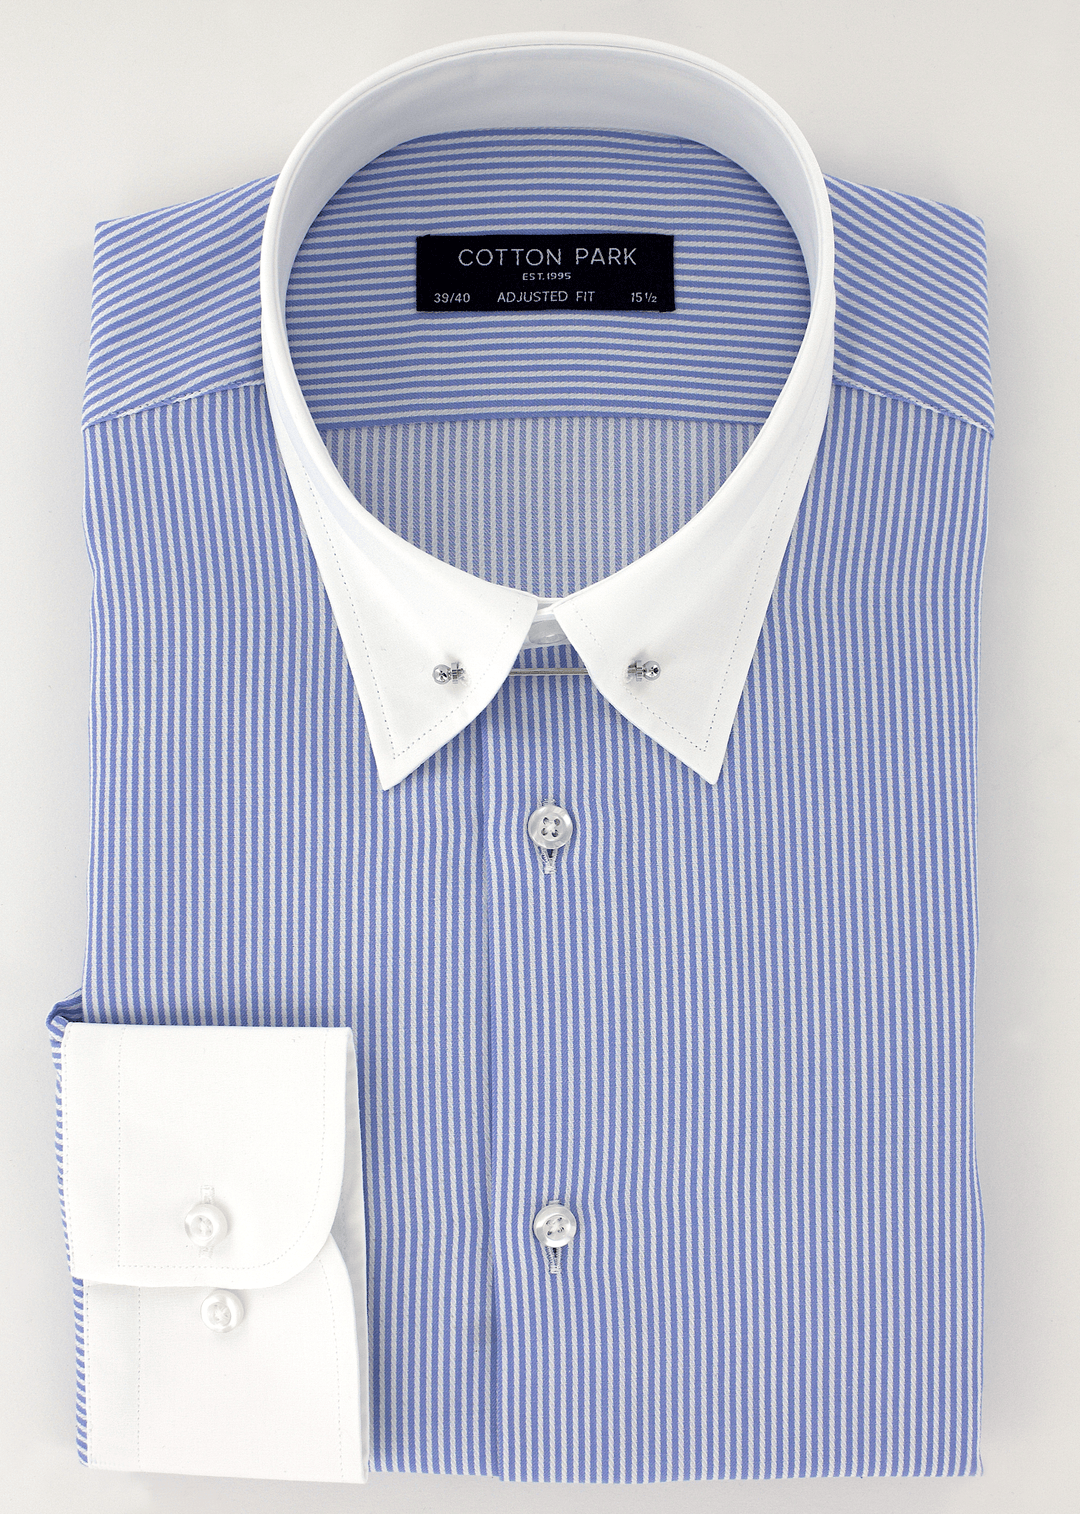 Chemise ajustée élégante pour homme col anglais bleu avec col blanc | Cotton Park